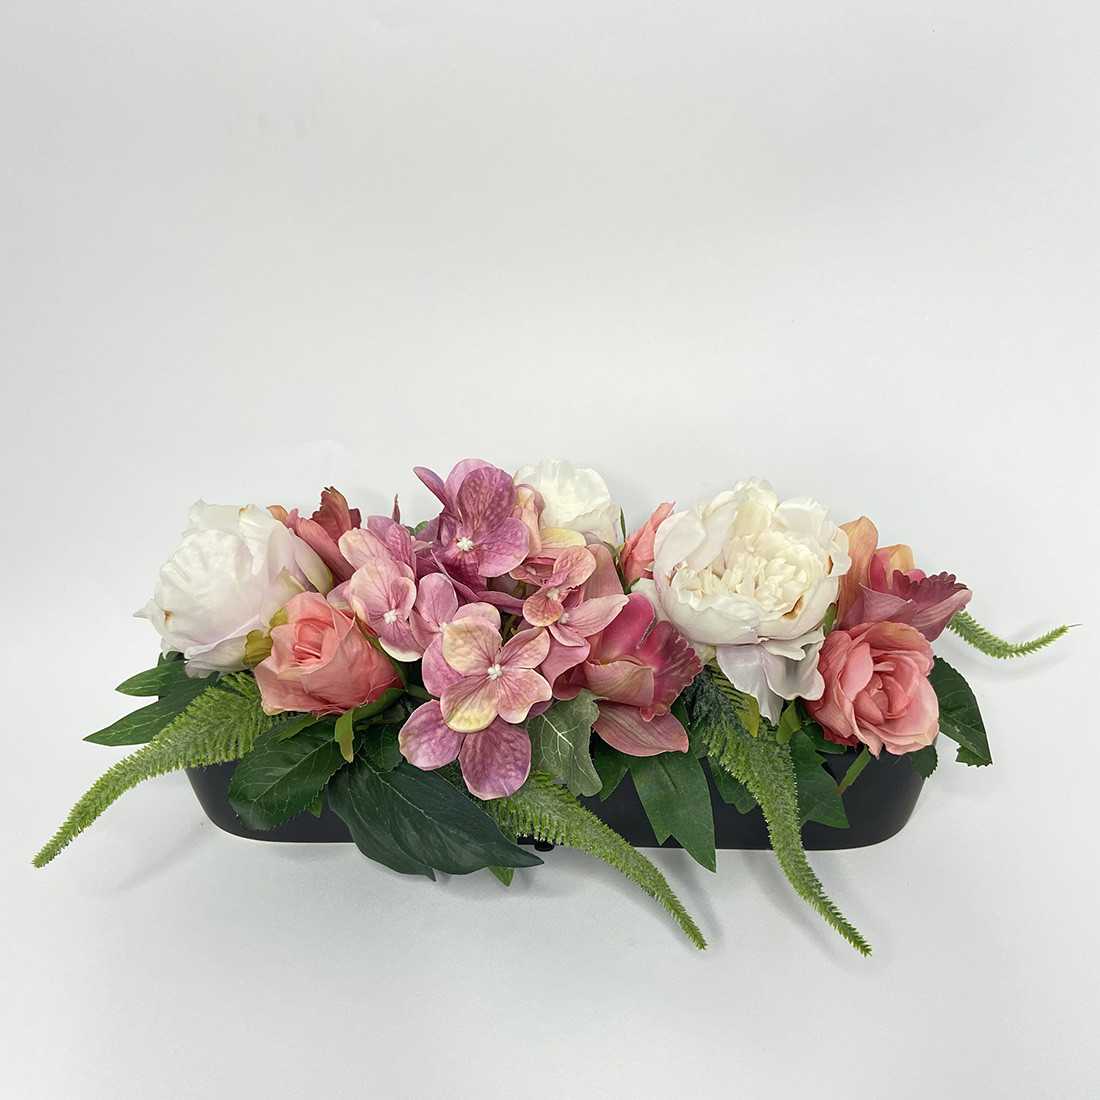 Vaso Ovale con fiori artificiali Vendita Online € 30,00 Miglior Prezzo